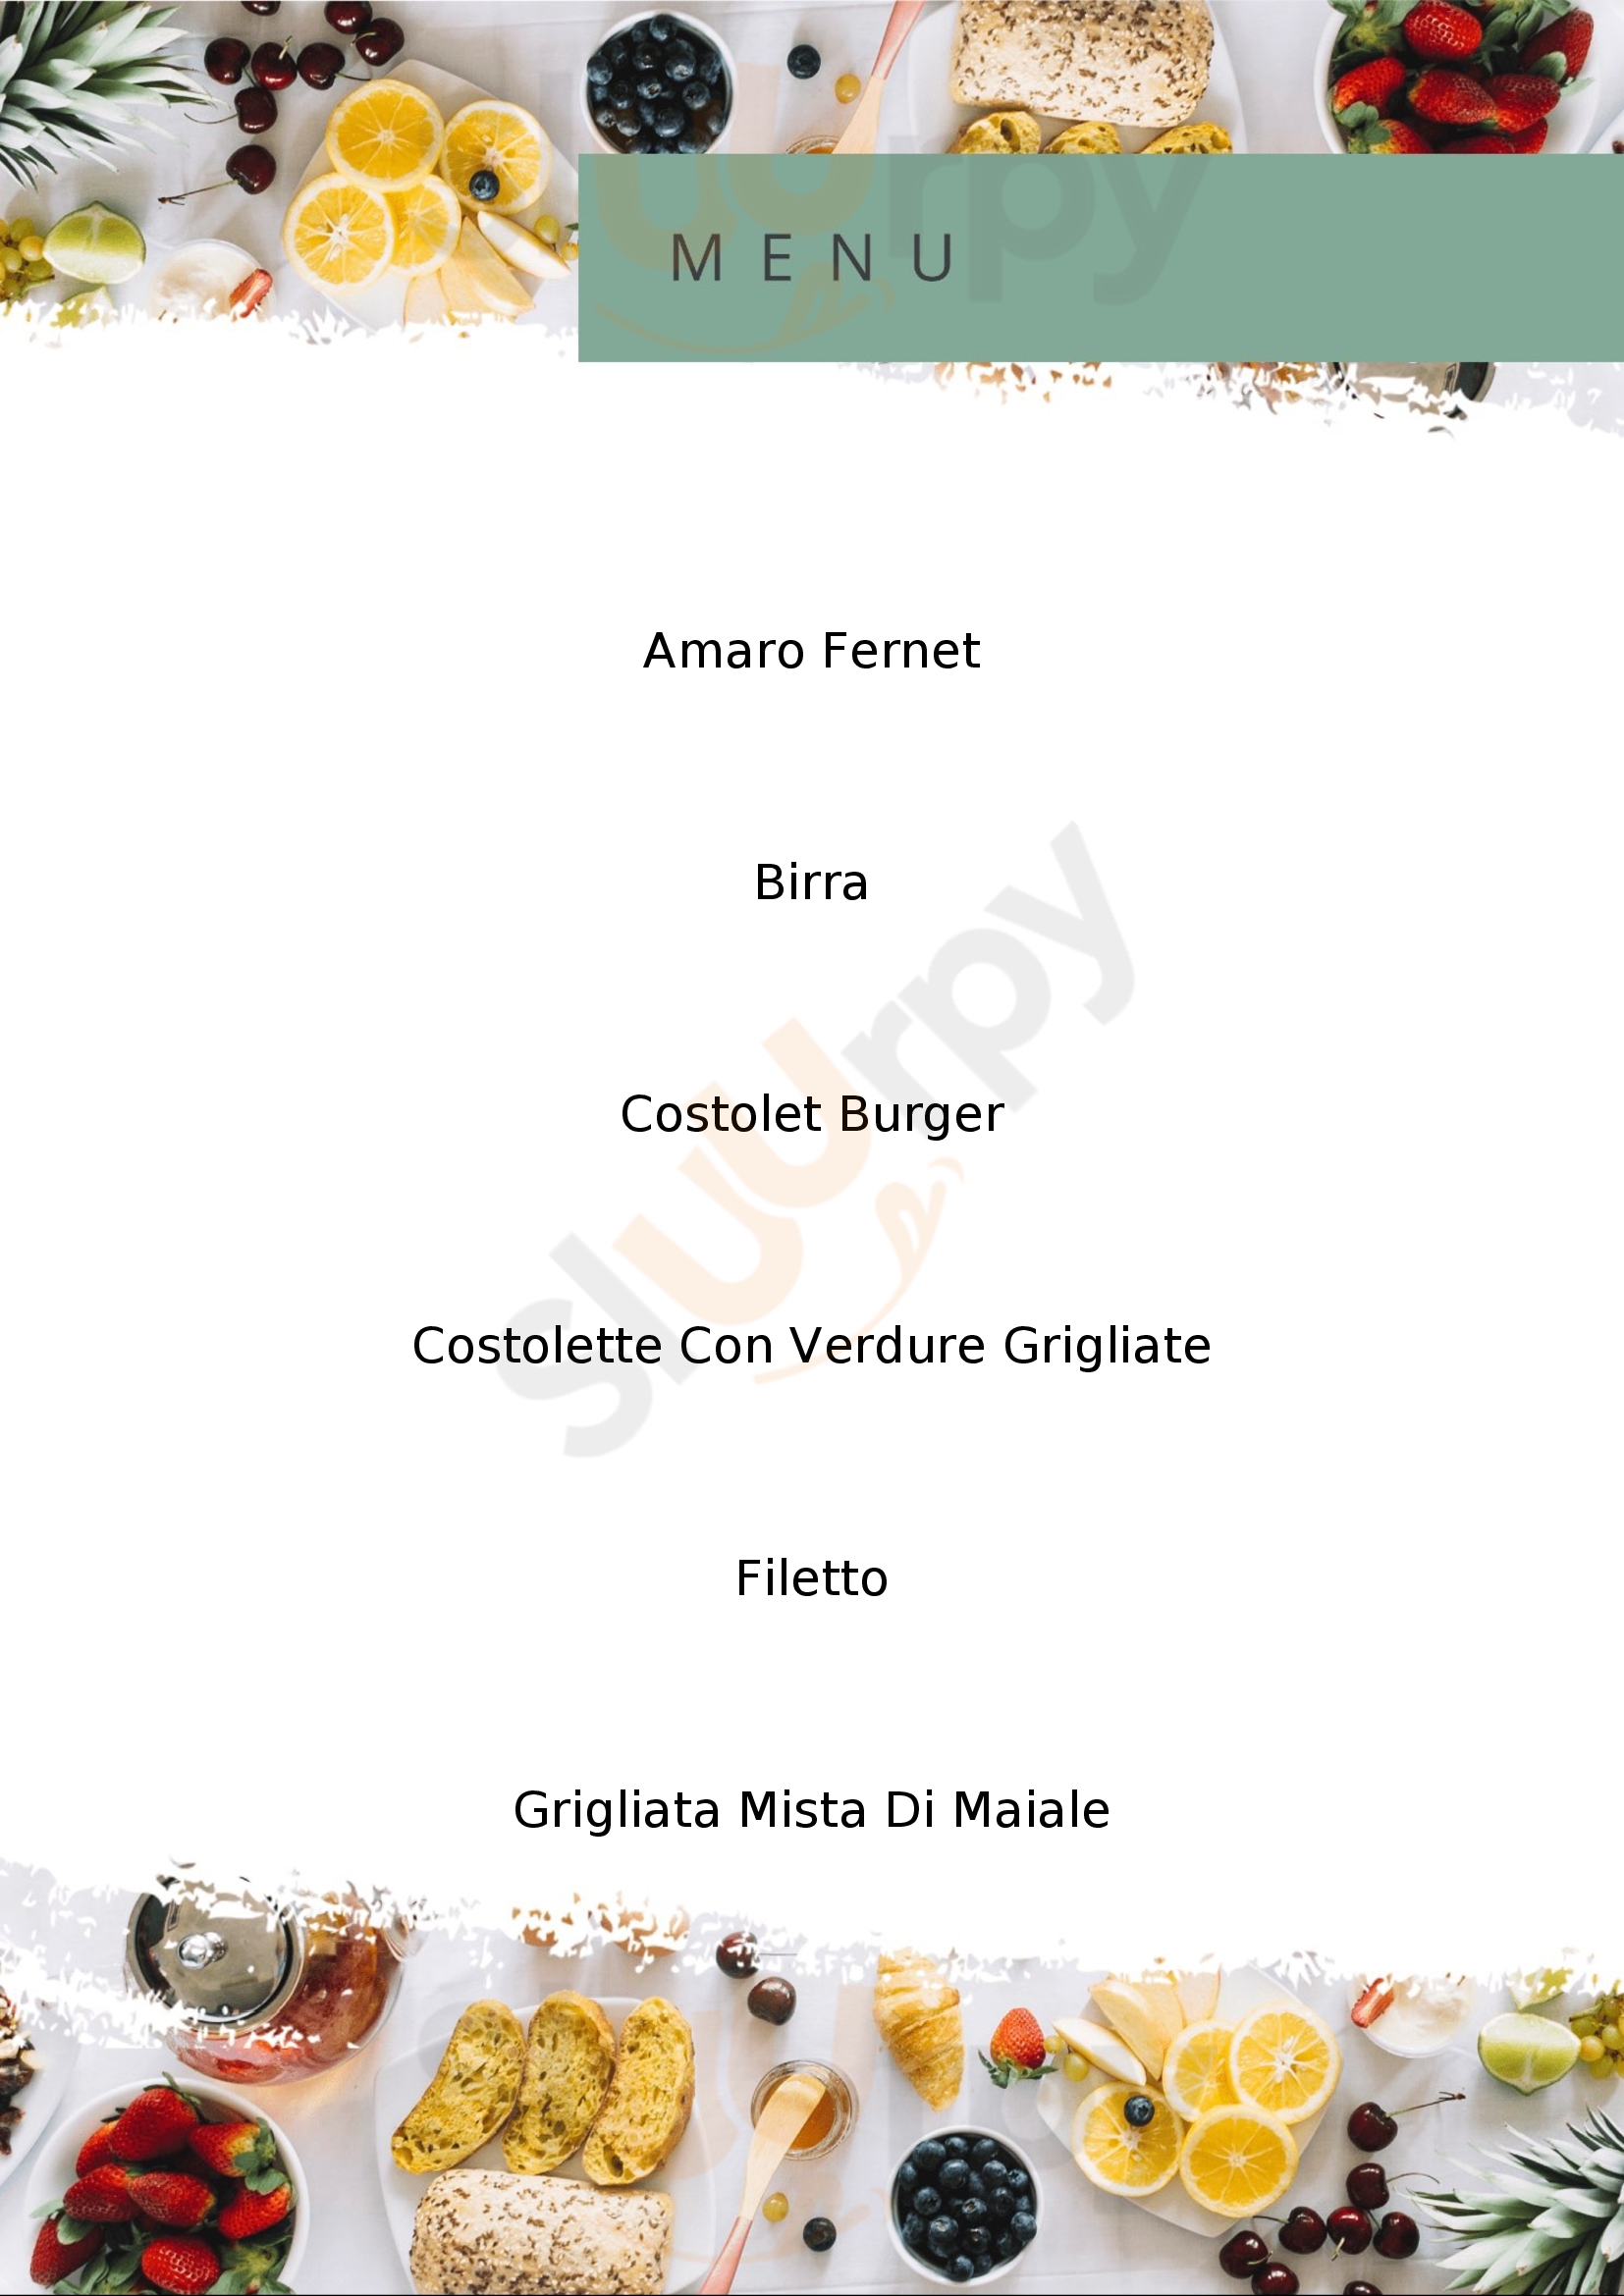 Paraponzi Steak House Birreria Stignano menù 1 pagina